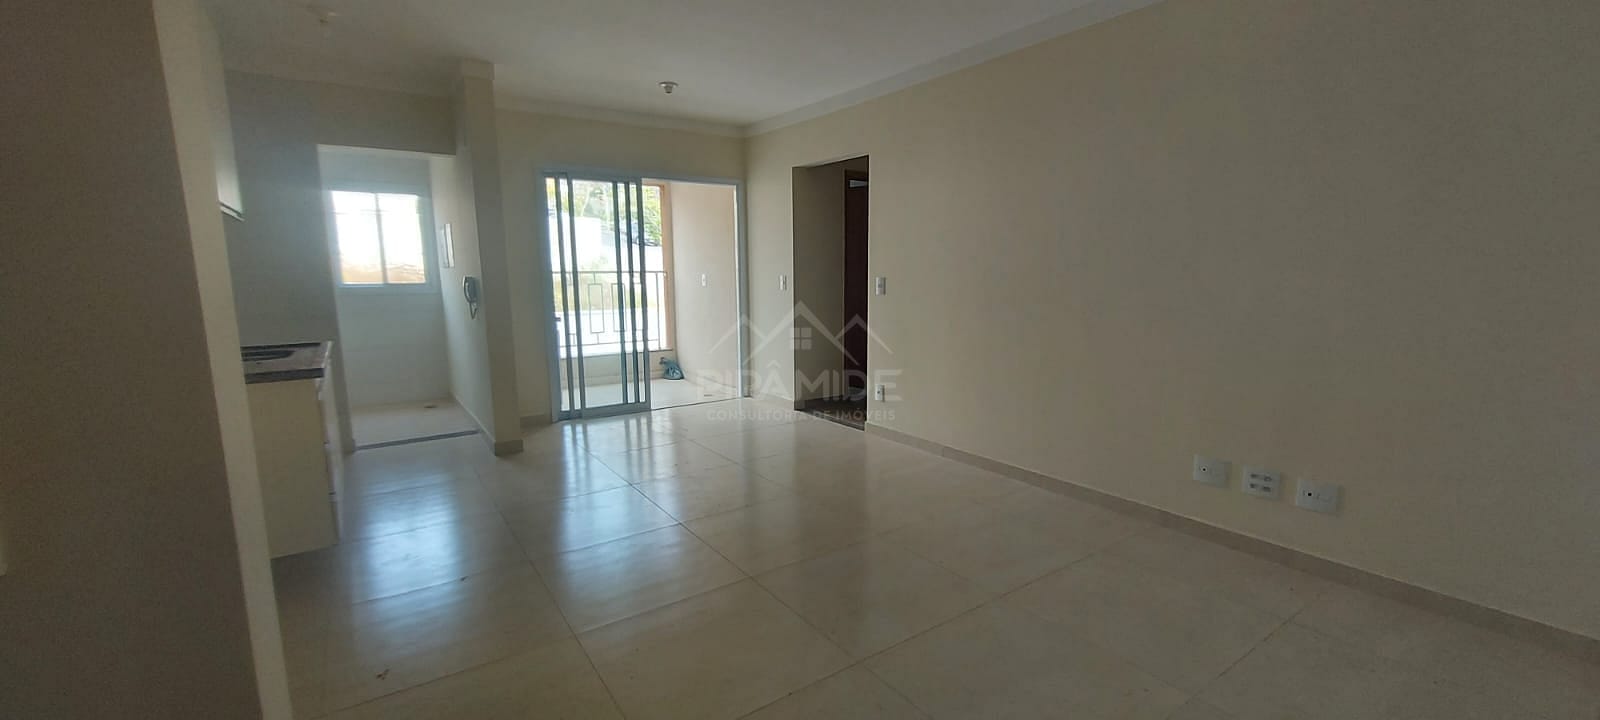 Apartamento em Loteamento Vila Flora II, Poços de Caldas/MG de 70m² 2 quartos para locação R$ 1.100,00/mes